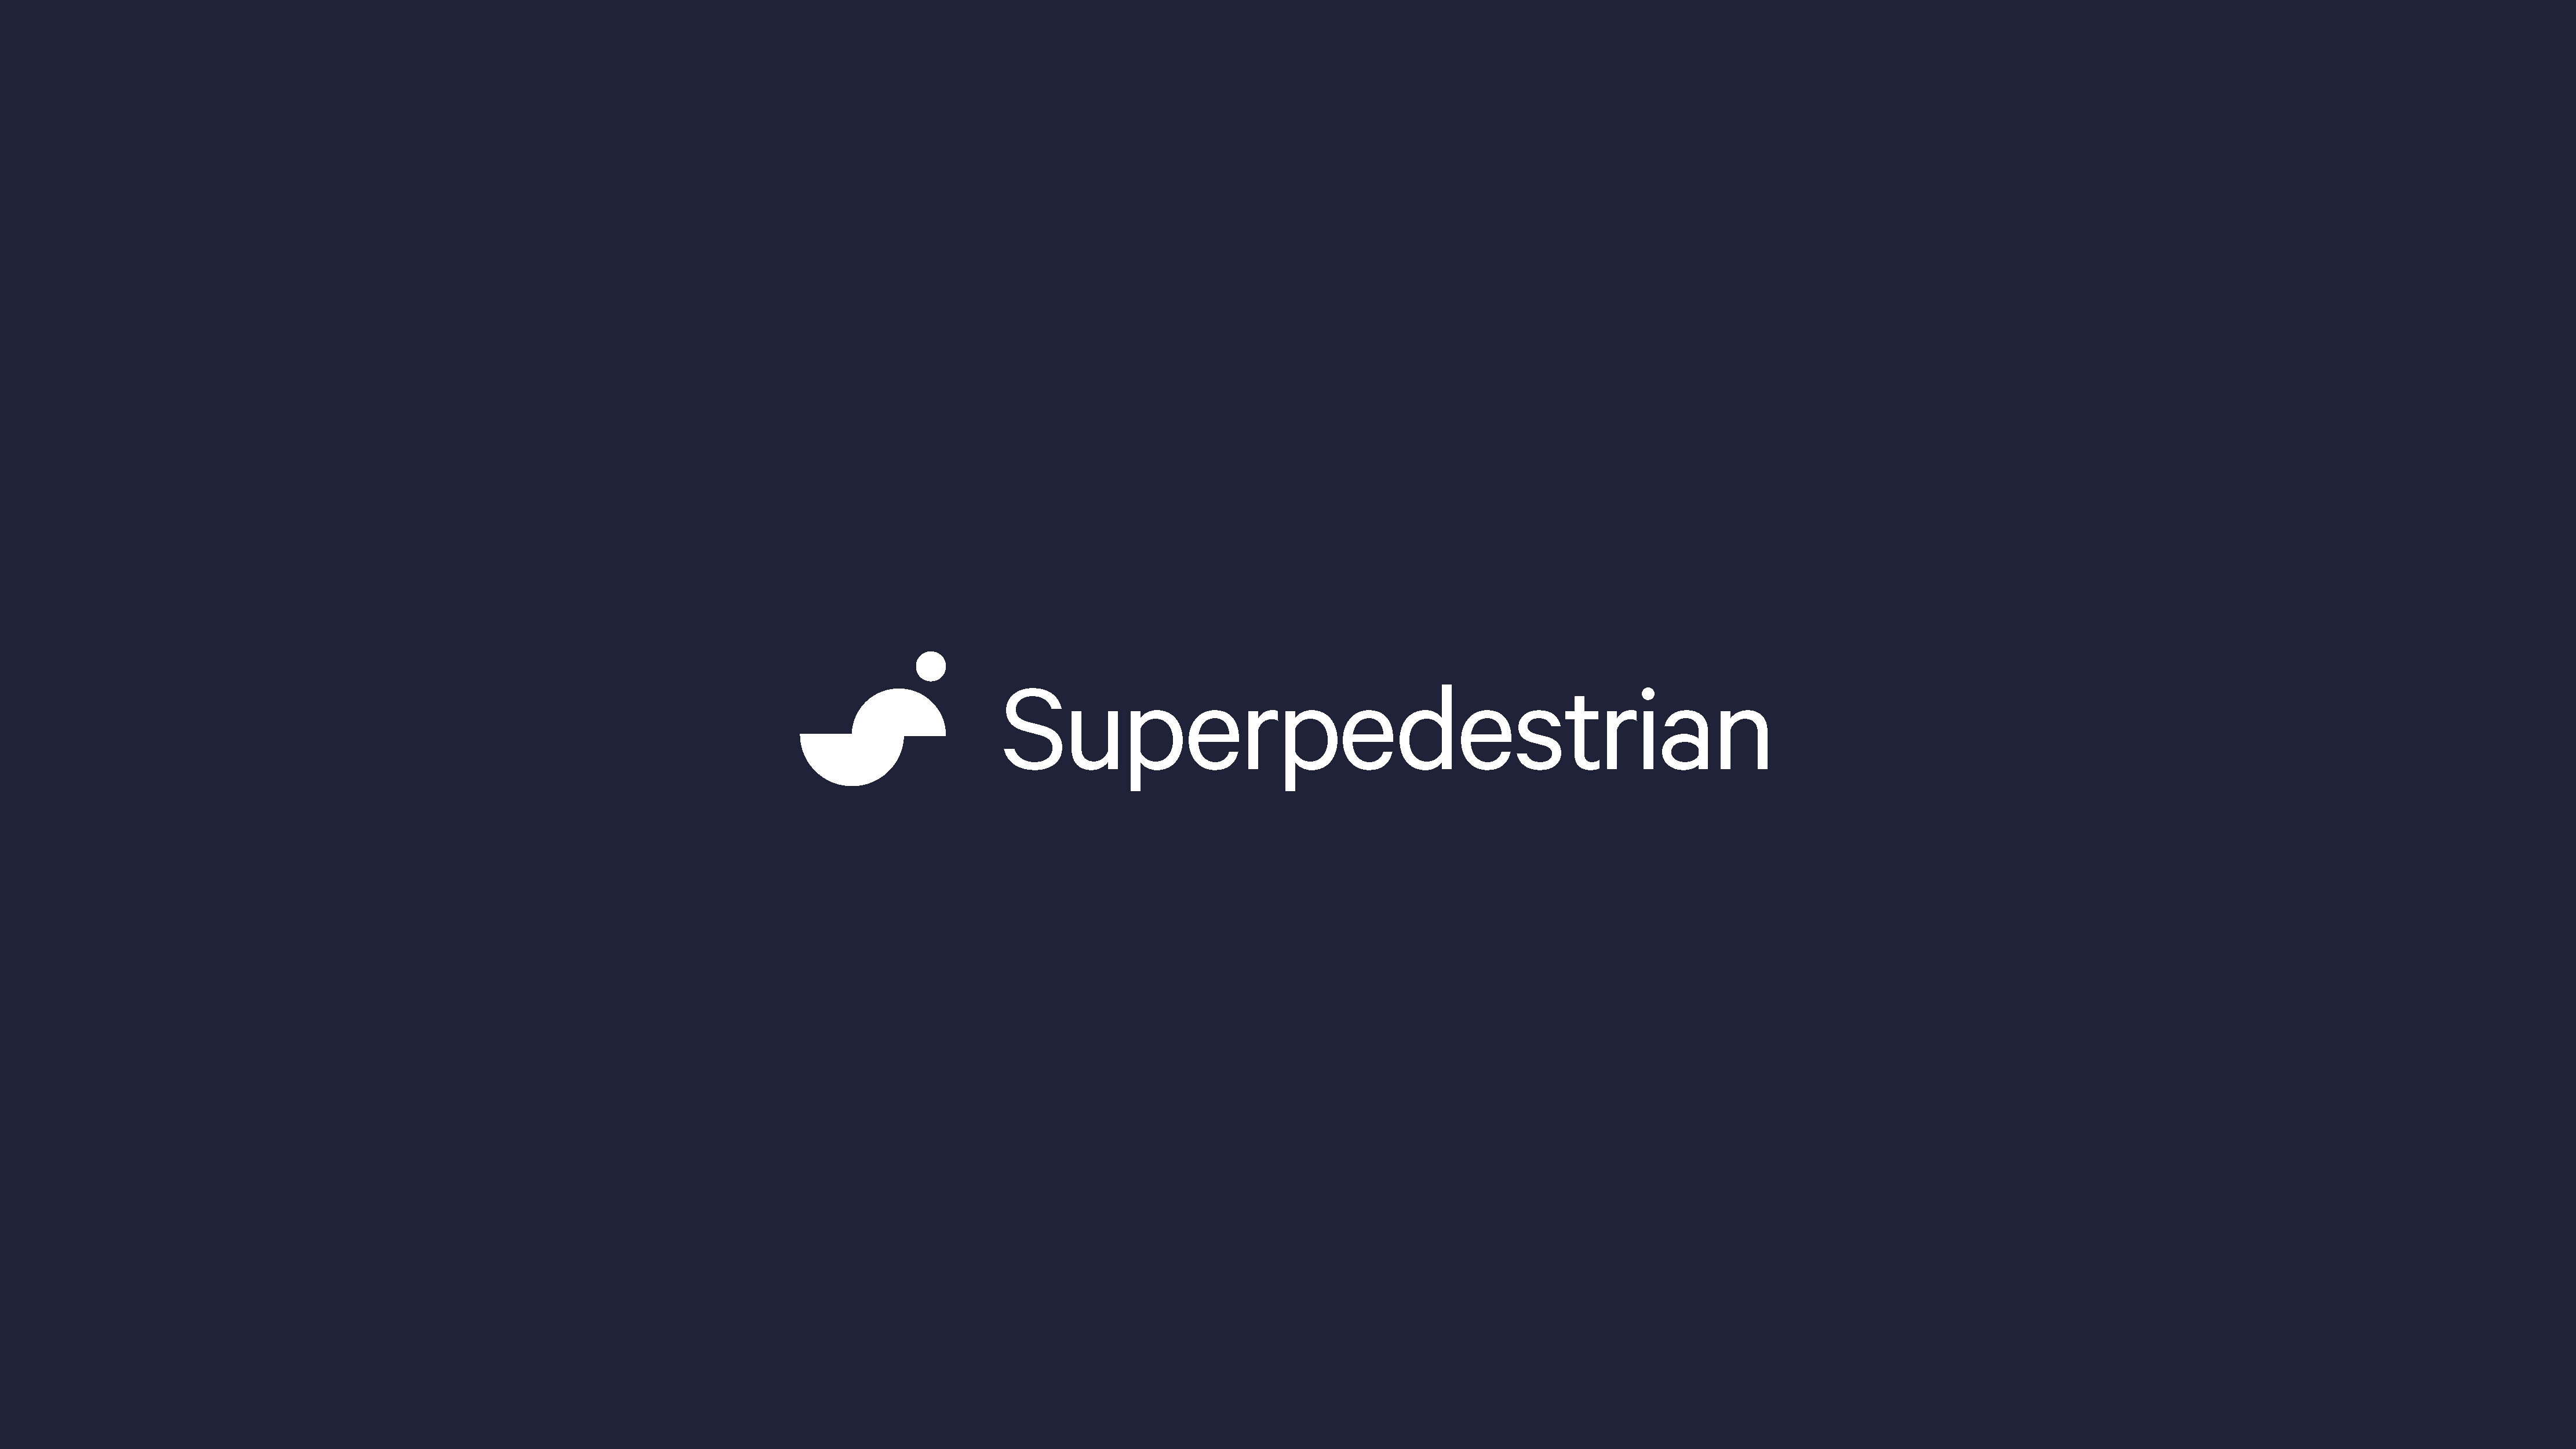 Superpedestrian Logo lockup